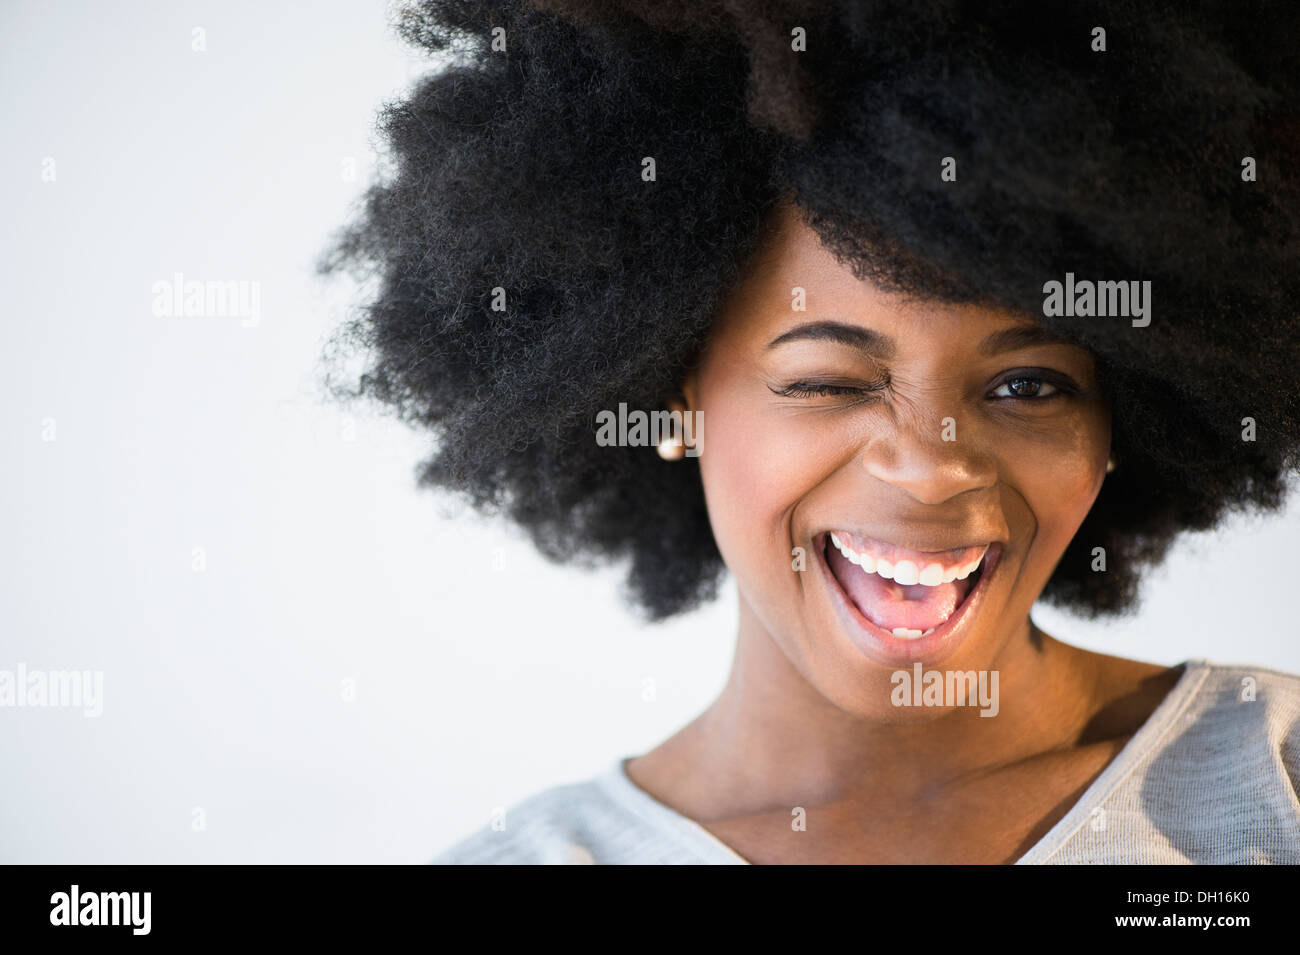 Mixed race woman winking Stock Photo